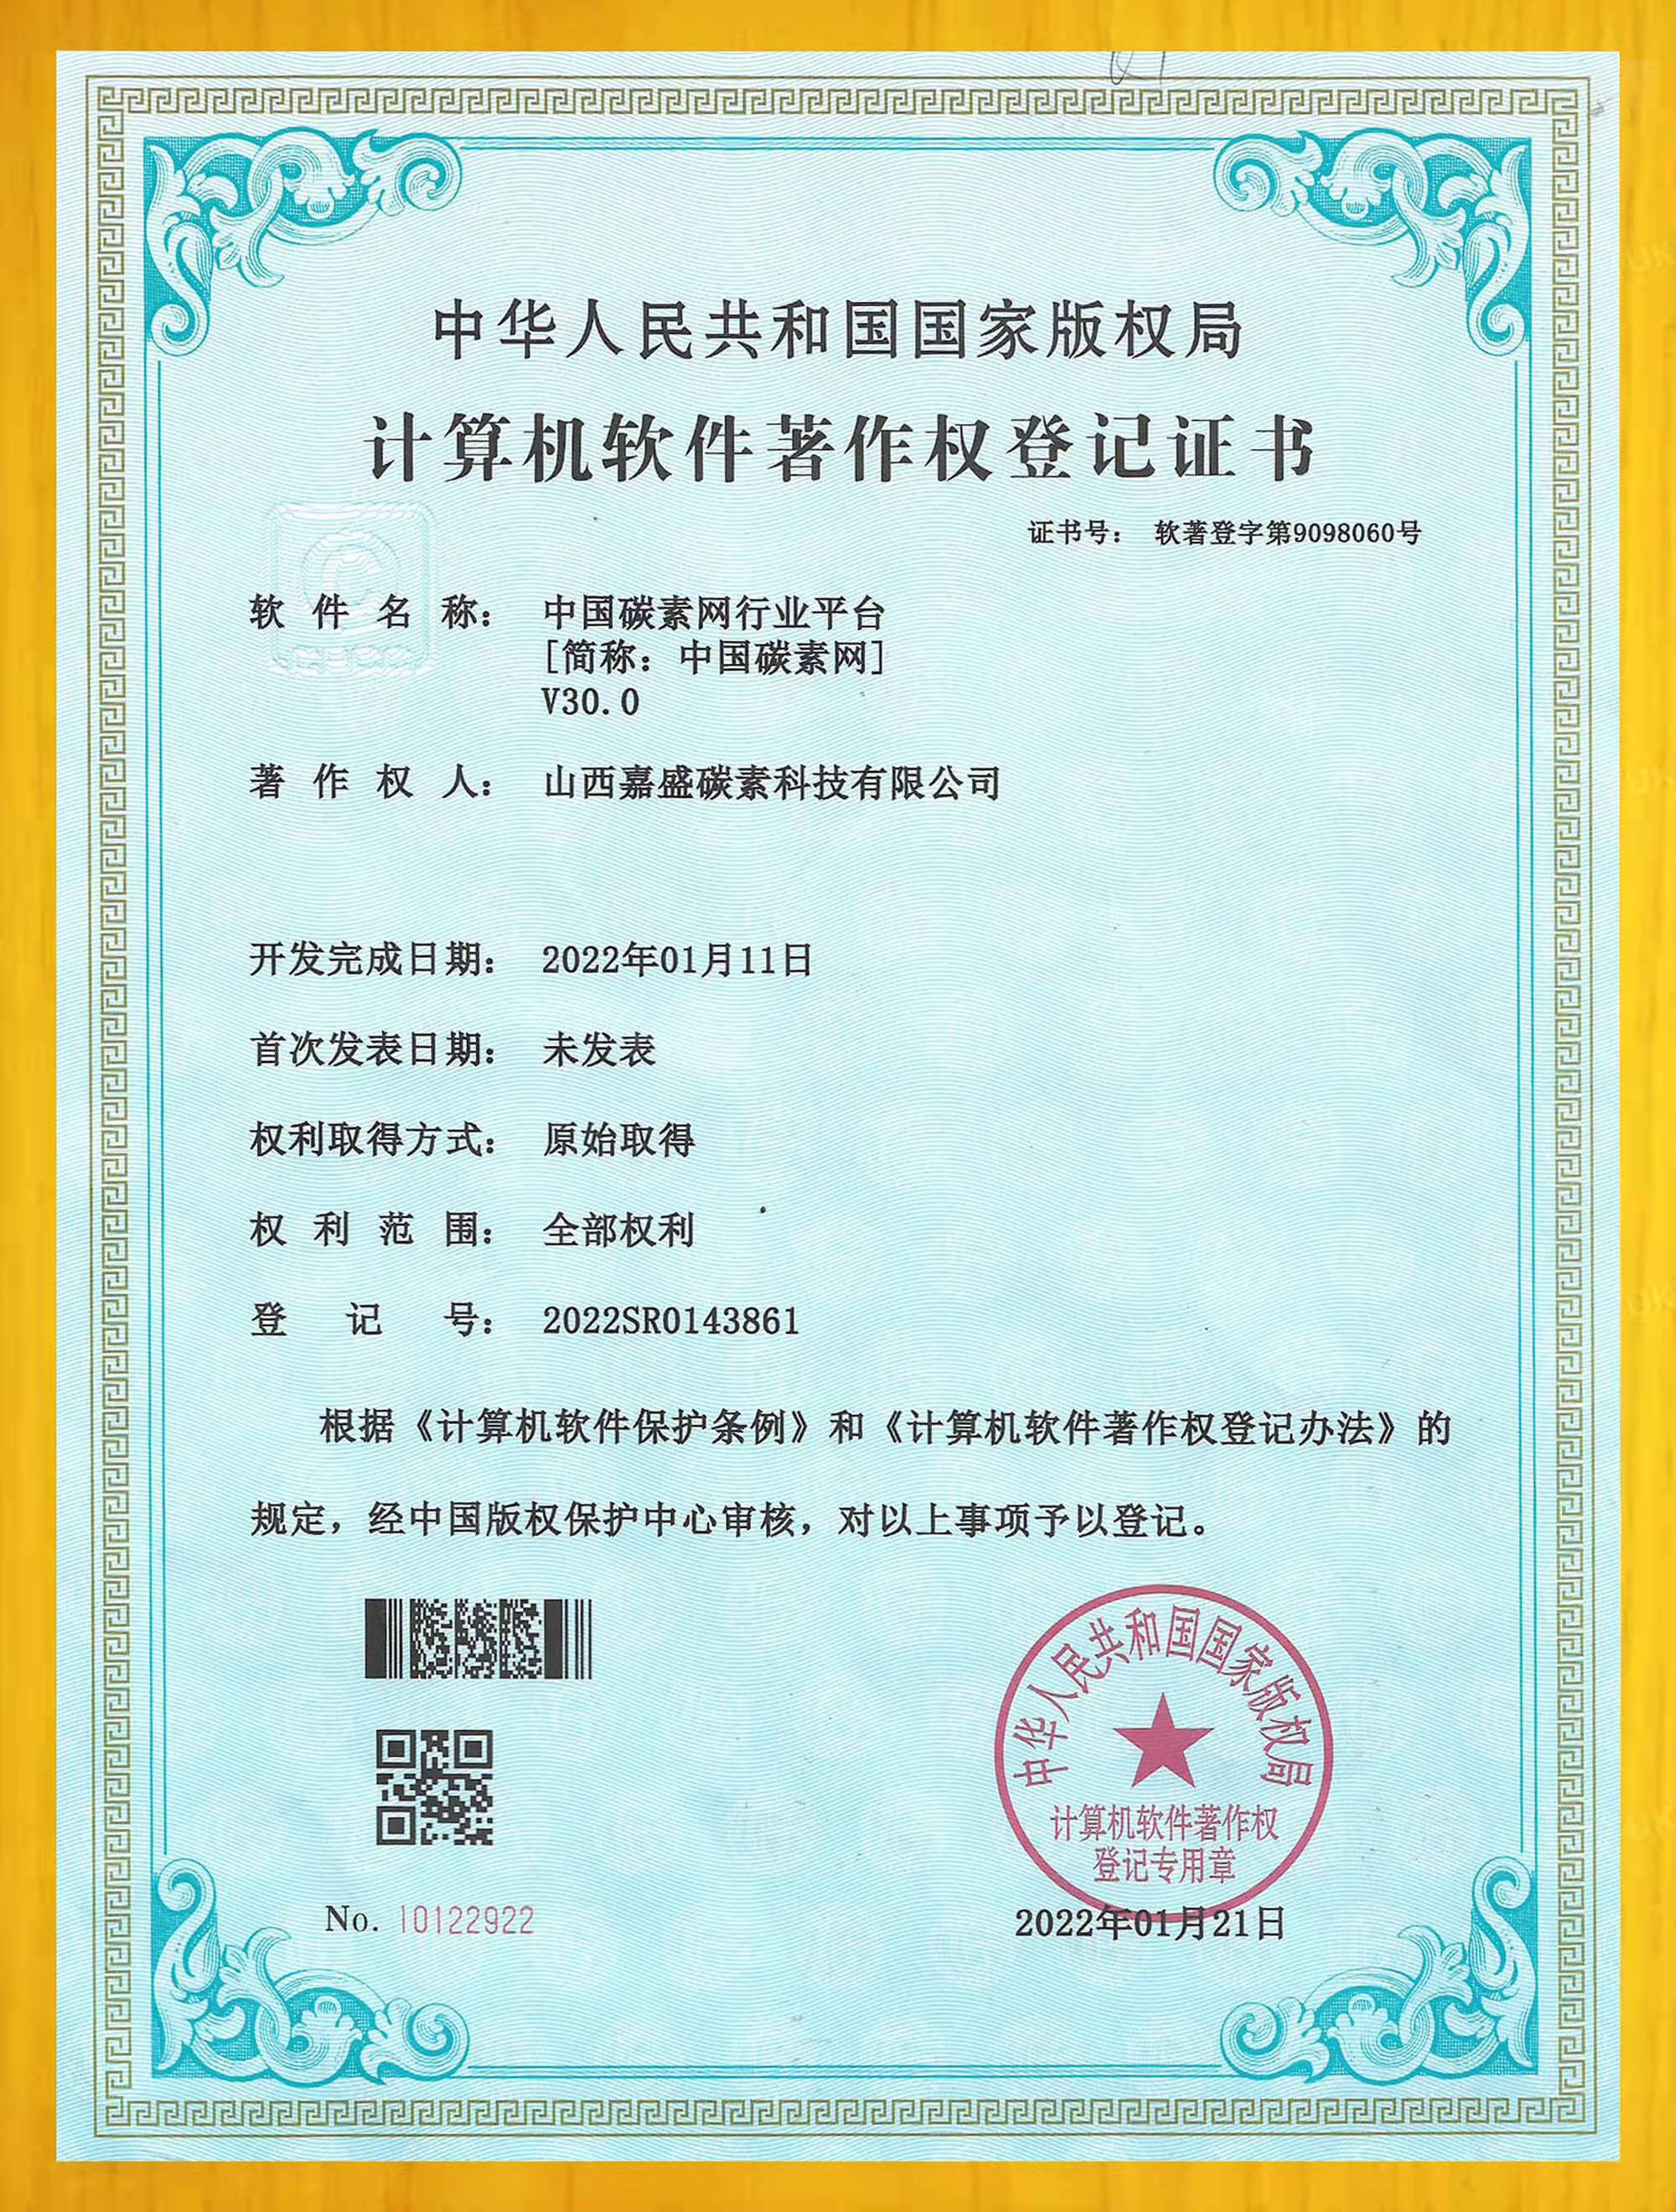 bat365中文官方网站官网平台软件著作权登记证书